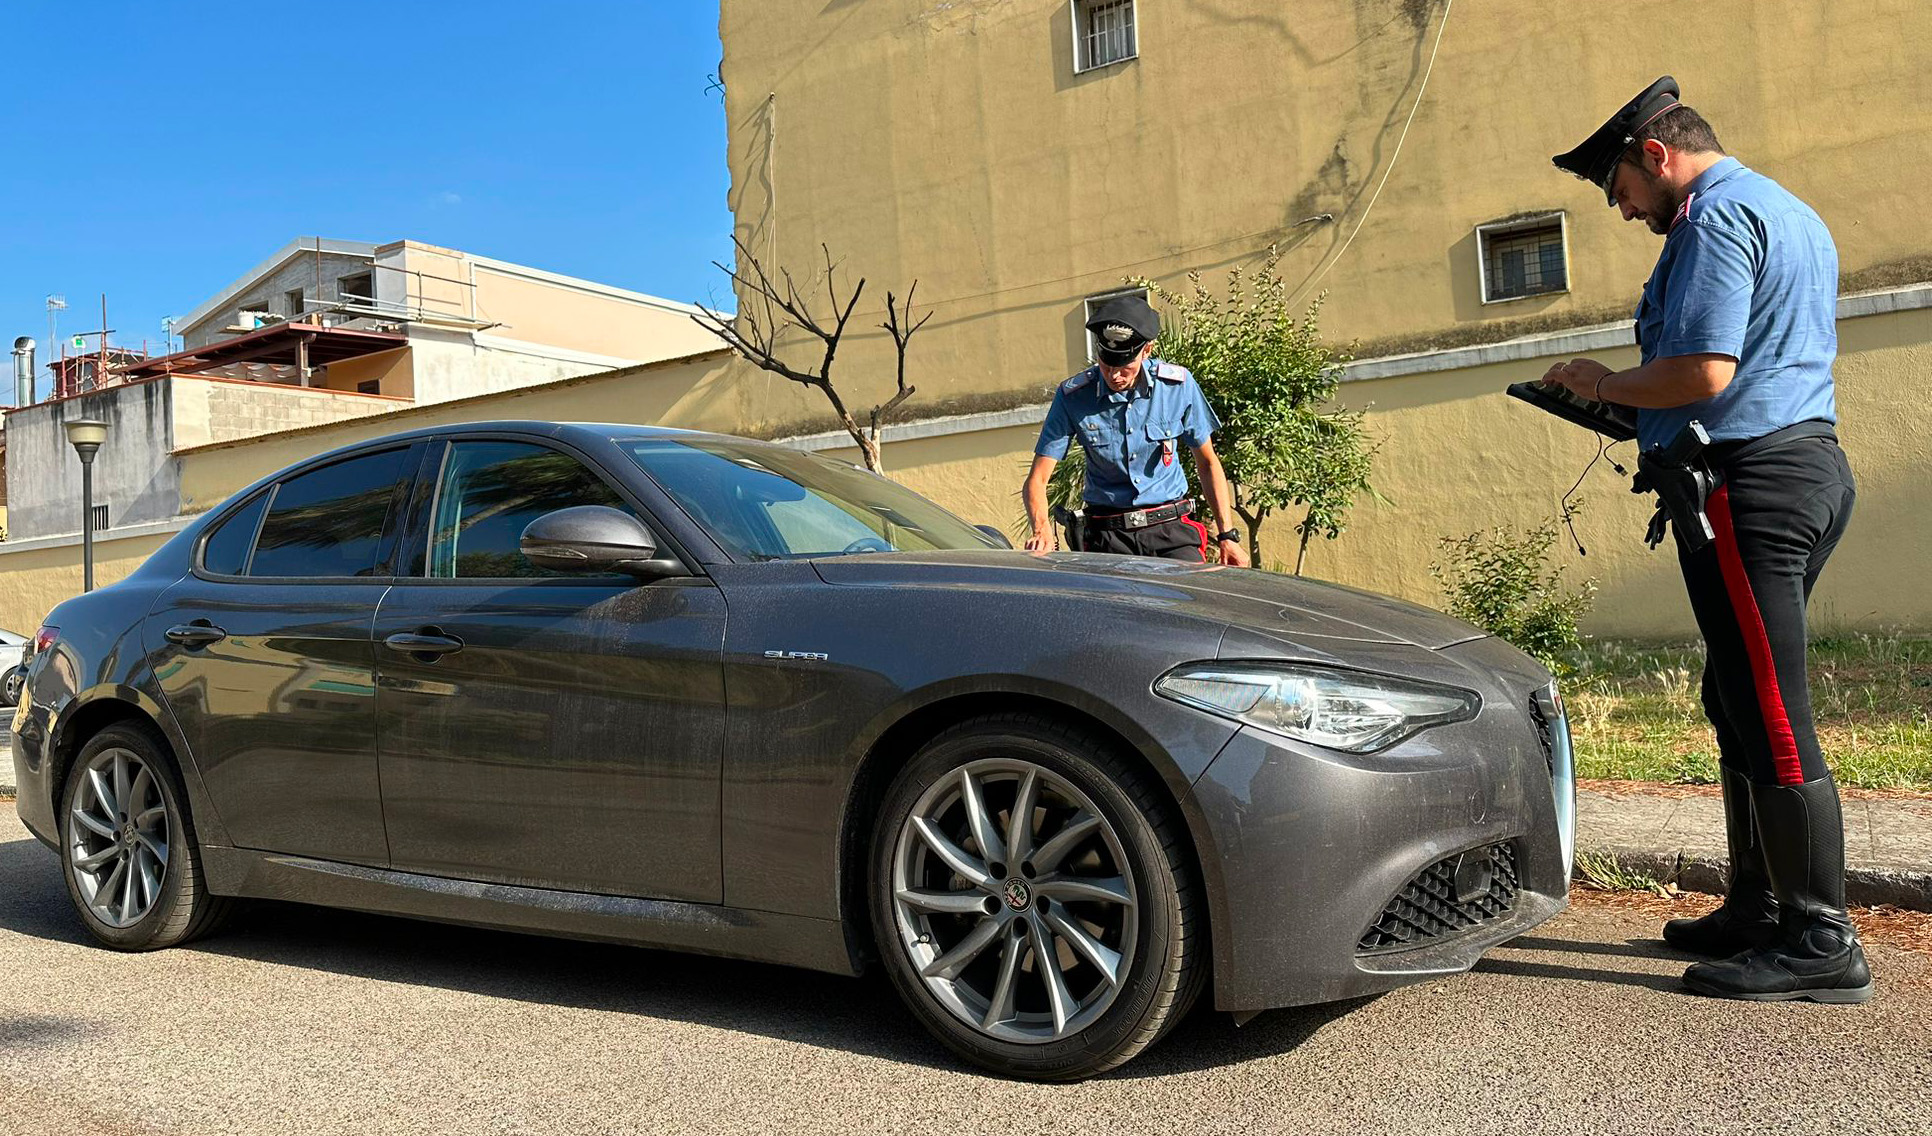 Riciclaggio di auto rubate, Carabinieri scovano officina per smontarle. 2 in manette